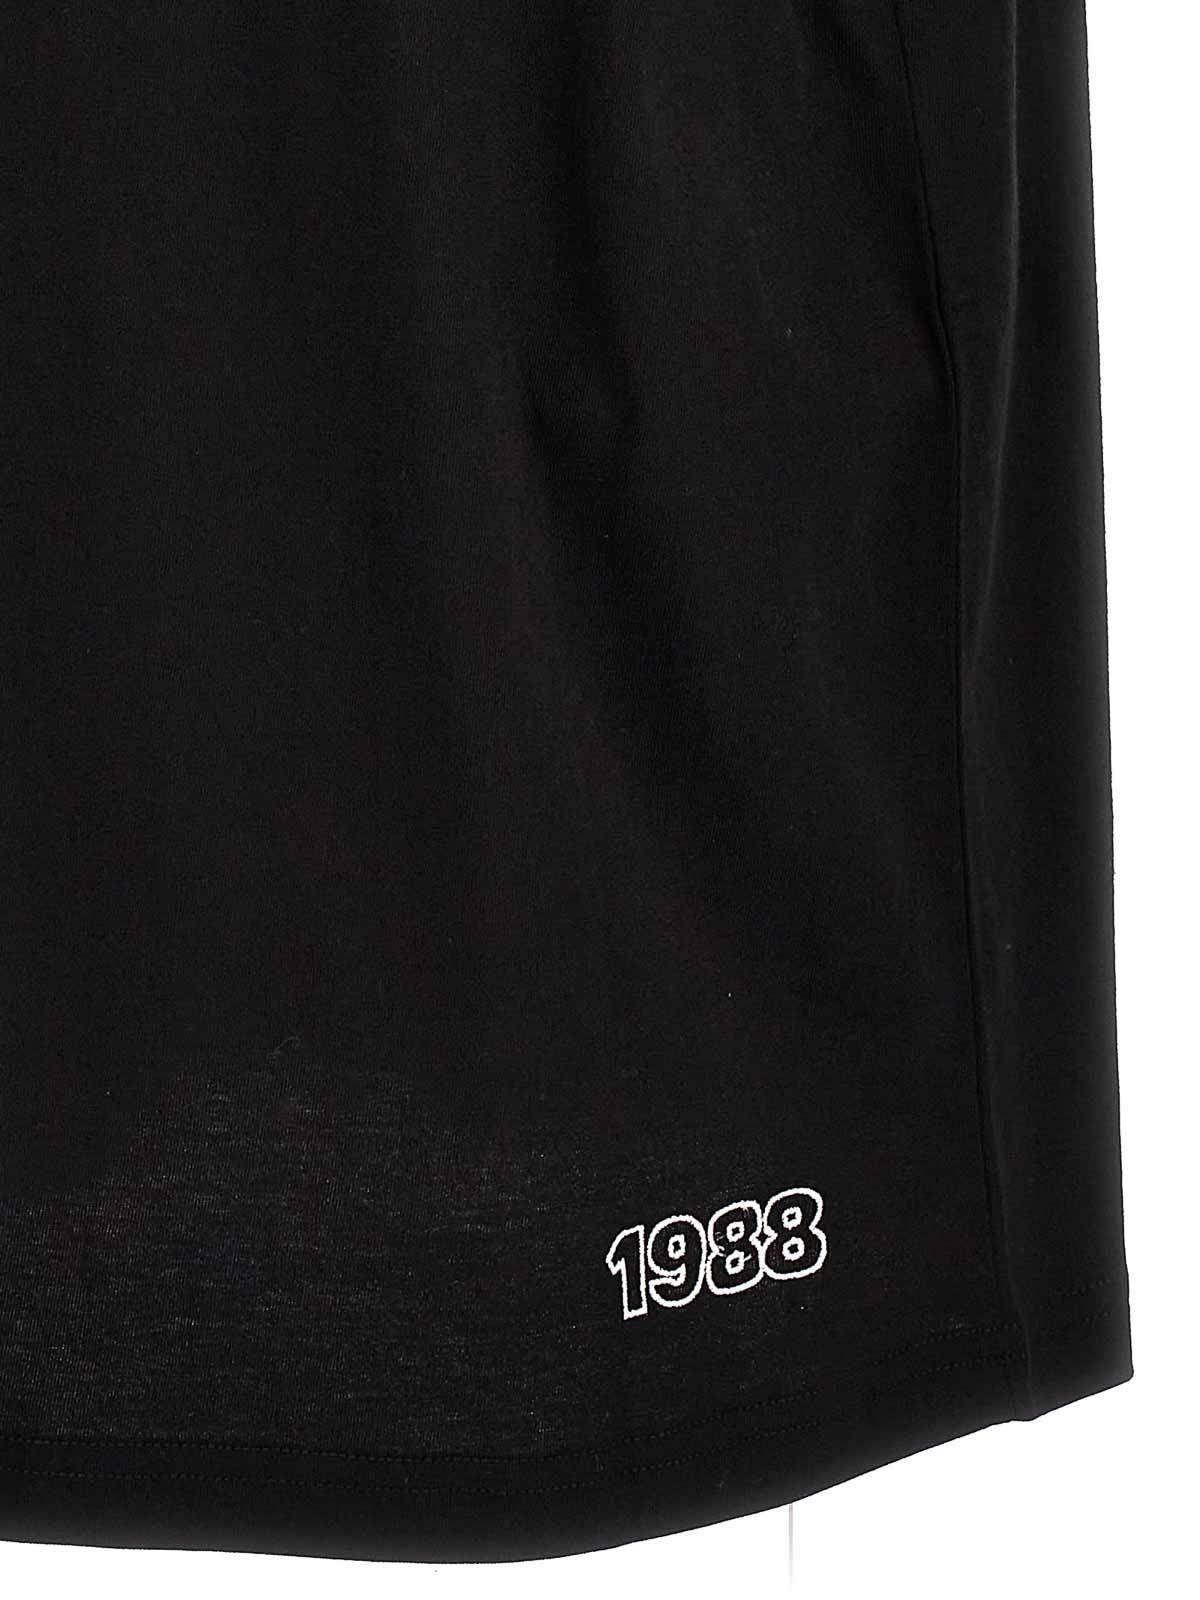 Shop Gcds Camiseta - Negro In Black